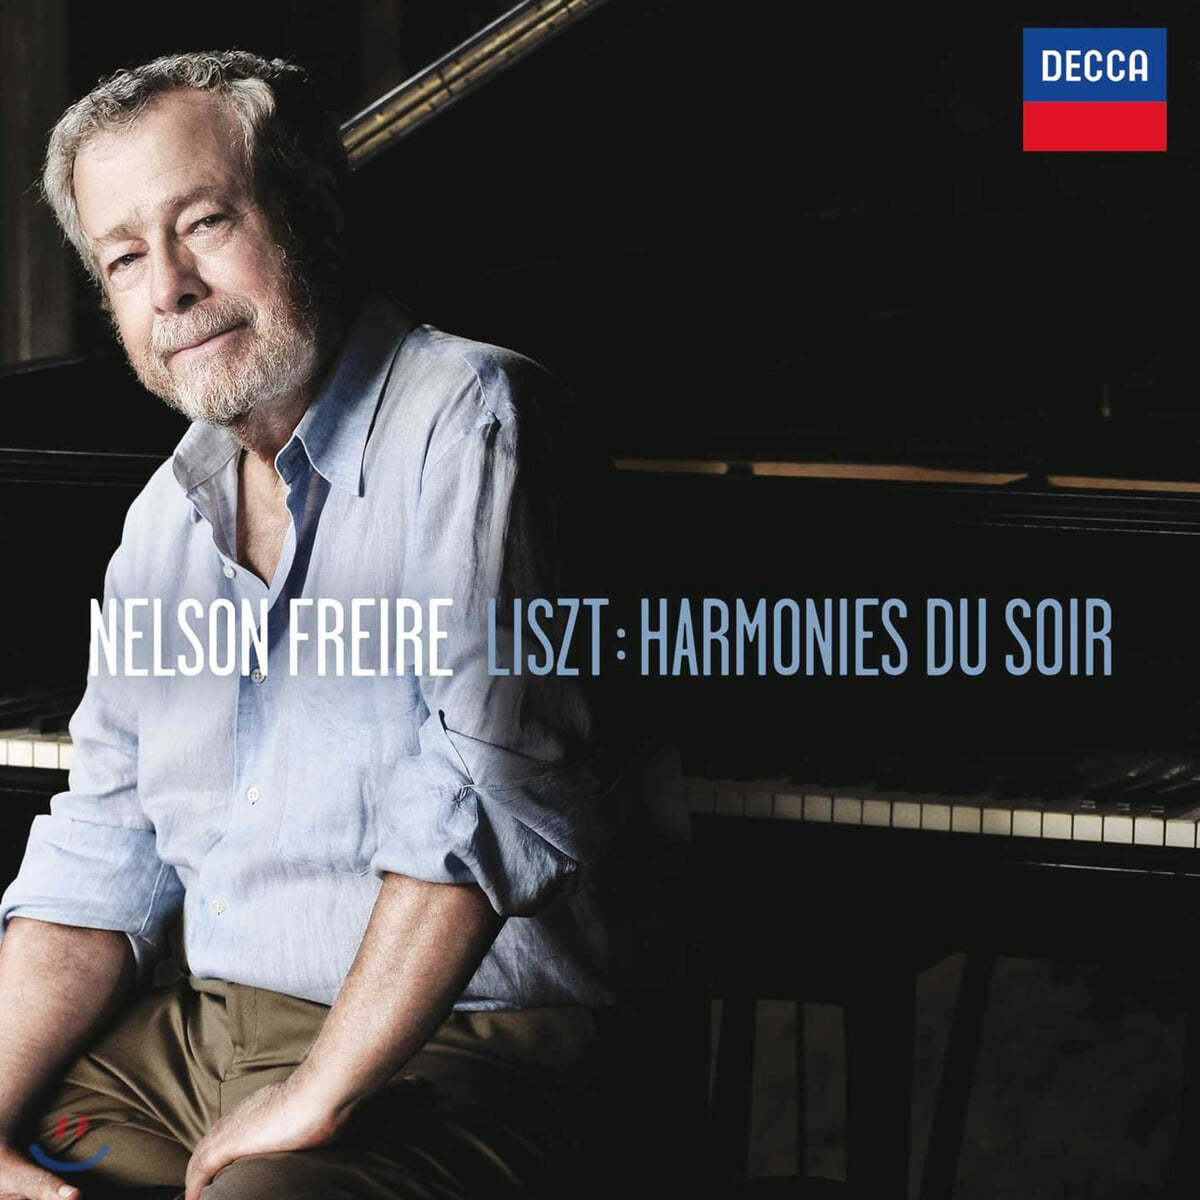 Nelson Freire 리스트: 콘솔레이션, 발라드 외 (Liszt: Harmonies Du Soir)